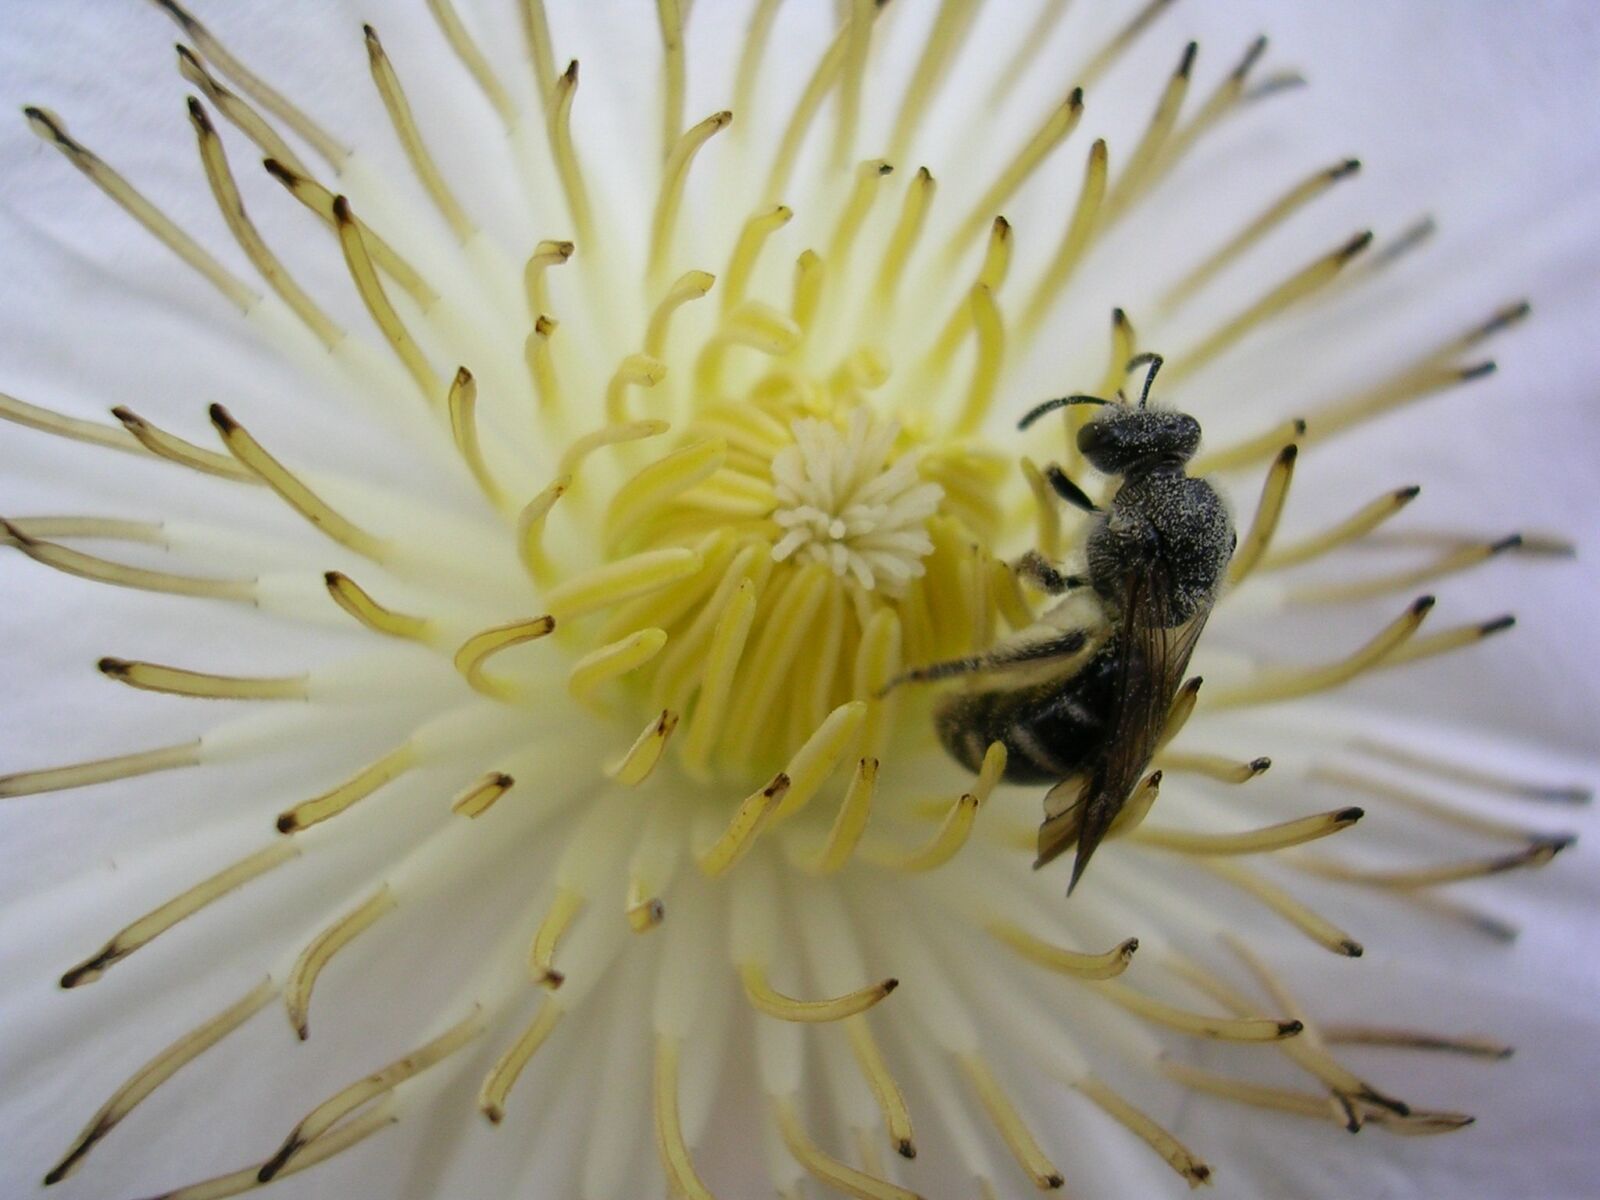 Nikon E3200 sample photo. Flower, bee, pollen photography